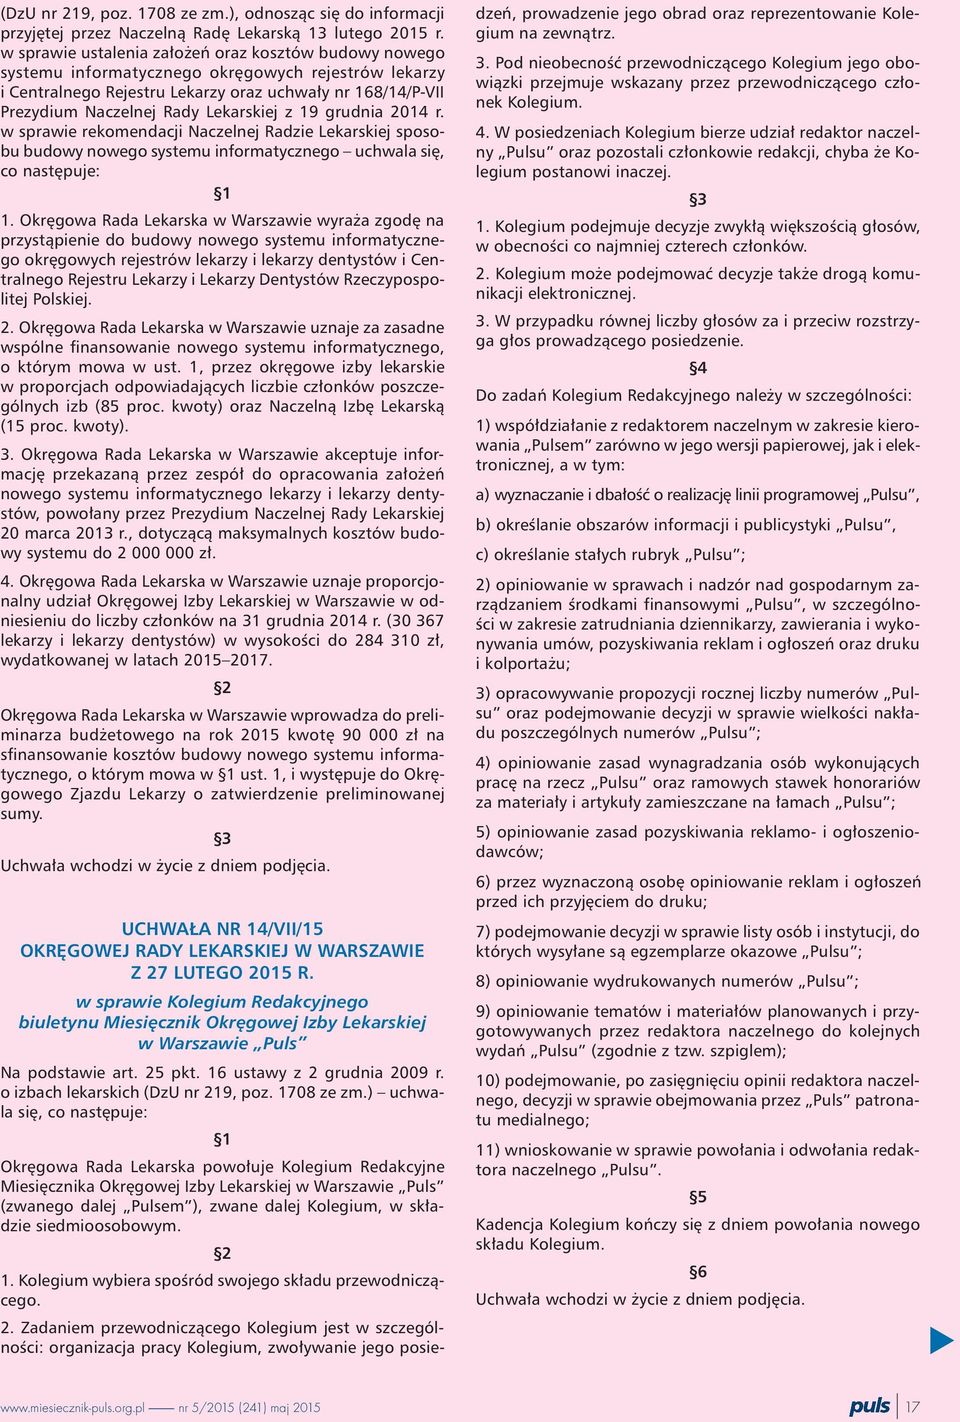 Lekarskiej z 19 grudnia 2014 r. w sprawie rekomendacji Naczelnej Radzie Lekarskiej sposobu budowy nowego systemu informatycznego uchwala siê, co nastêpuje: 1 1.